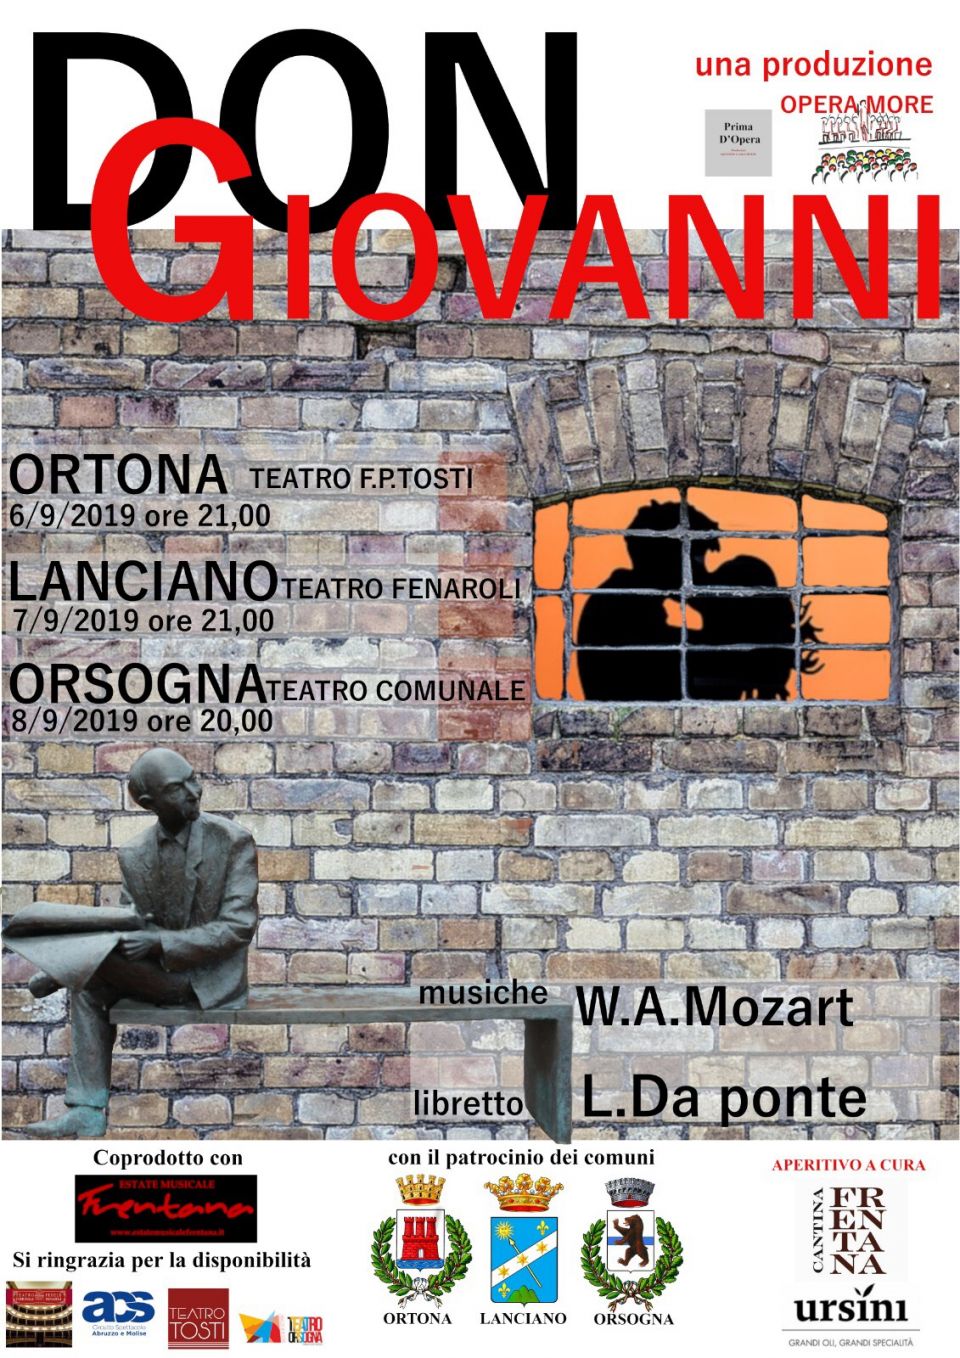 Don Giovanni - 6 settembre 2019 ore 21